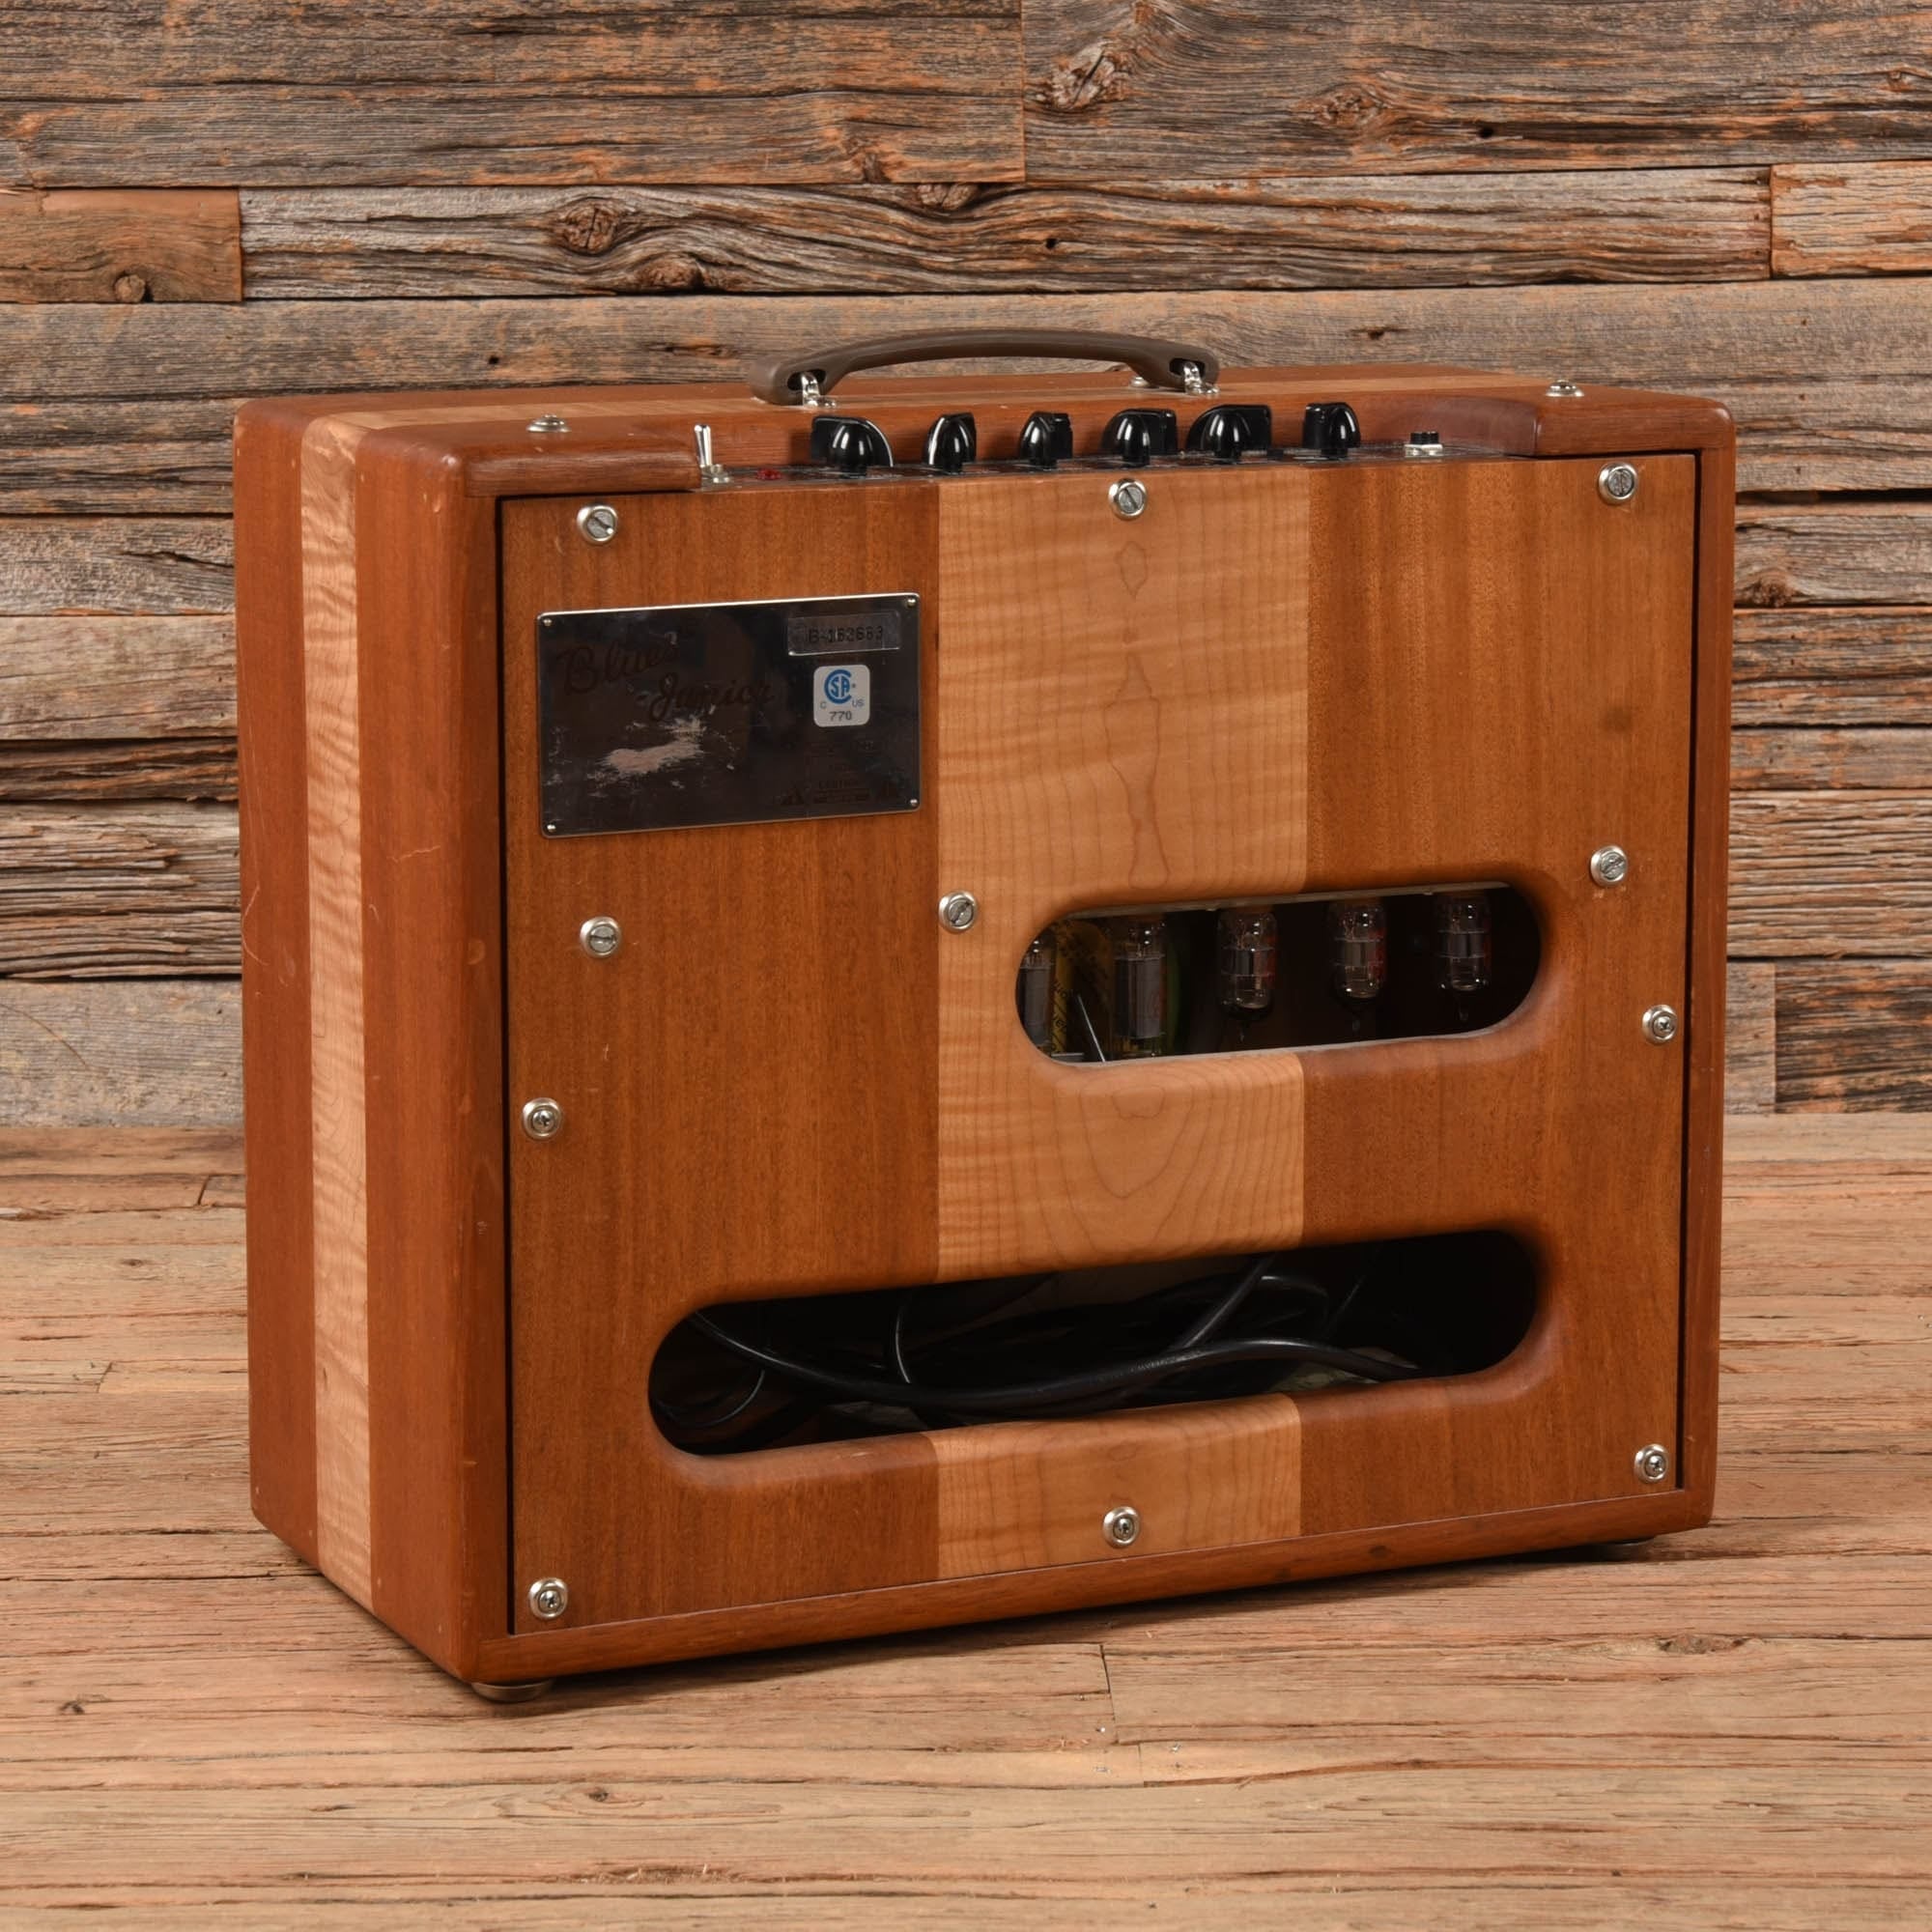 Fender Blues Jr. Hardwood Cabinet Amps / Guitar Cabinets